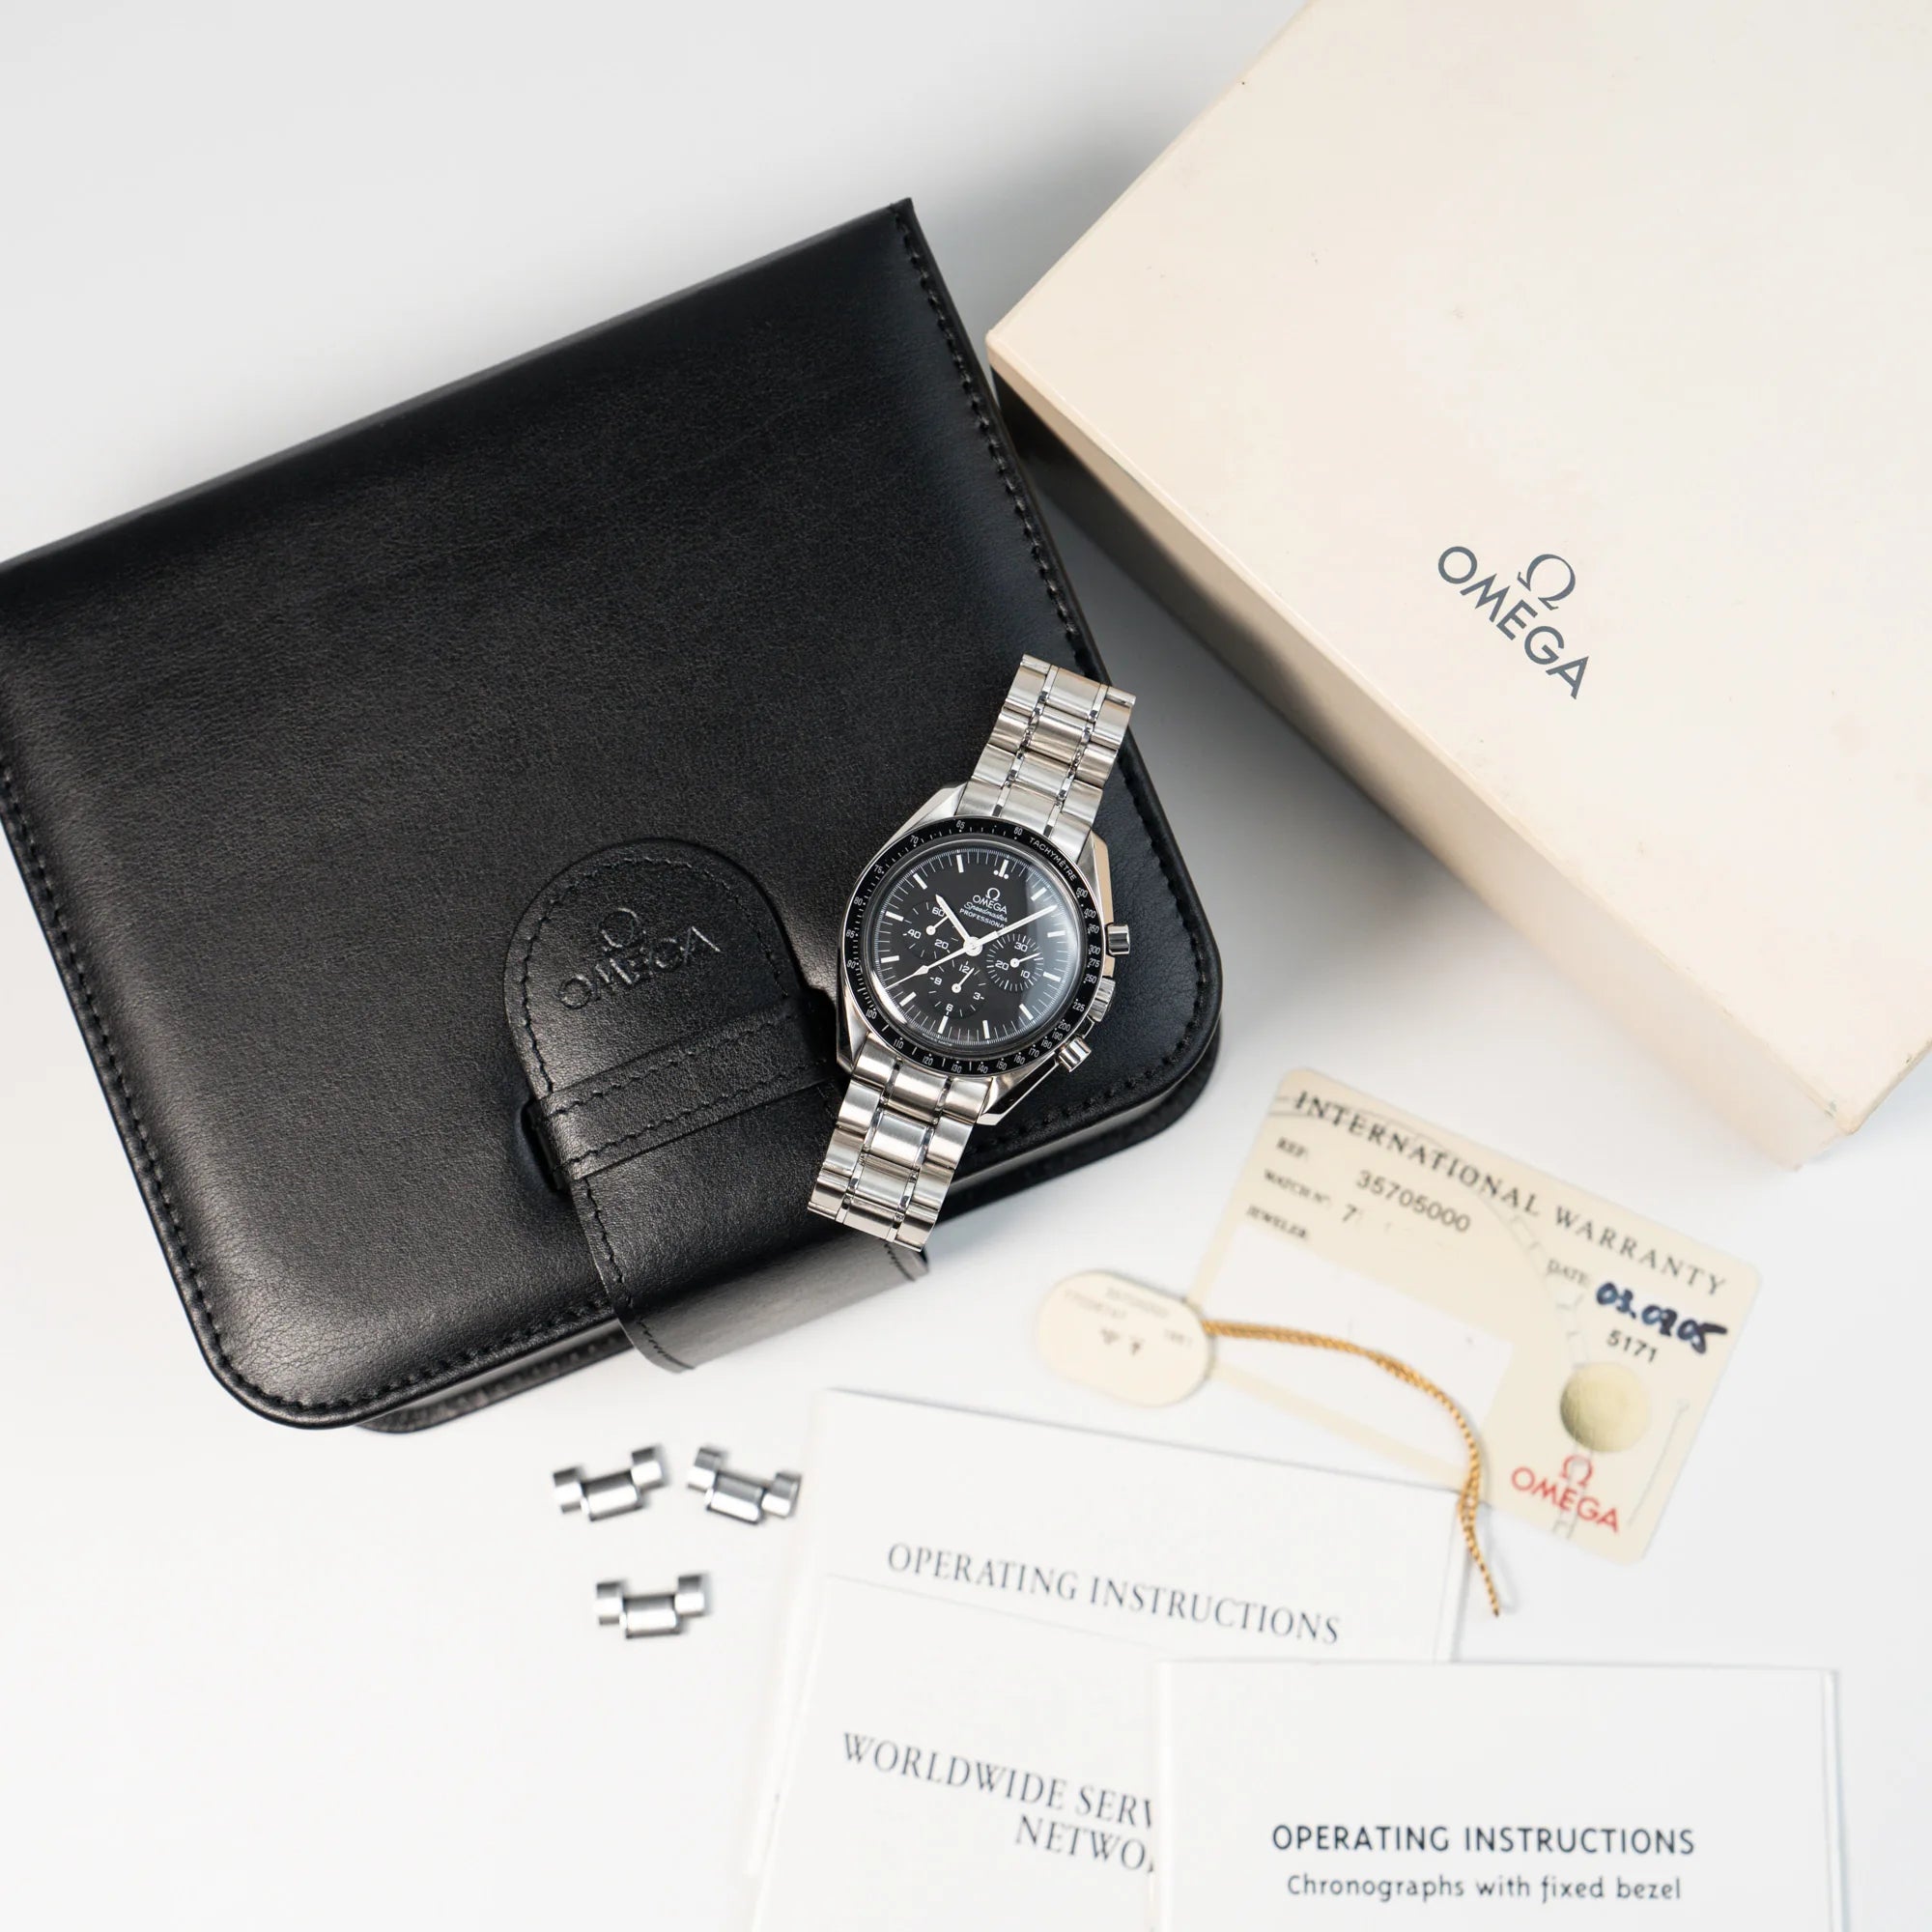 Omega Speedmaster Moonwatch Professional mit der Referenz 357.50.00 mit dem klassischen schwarzen Zifferblatt im Full-Set mit Box, Papieren und Garantie-Karte